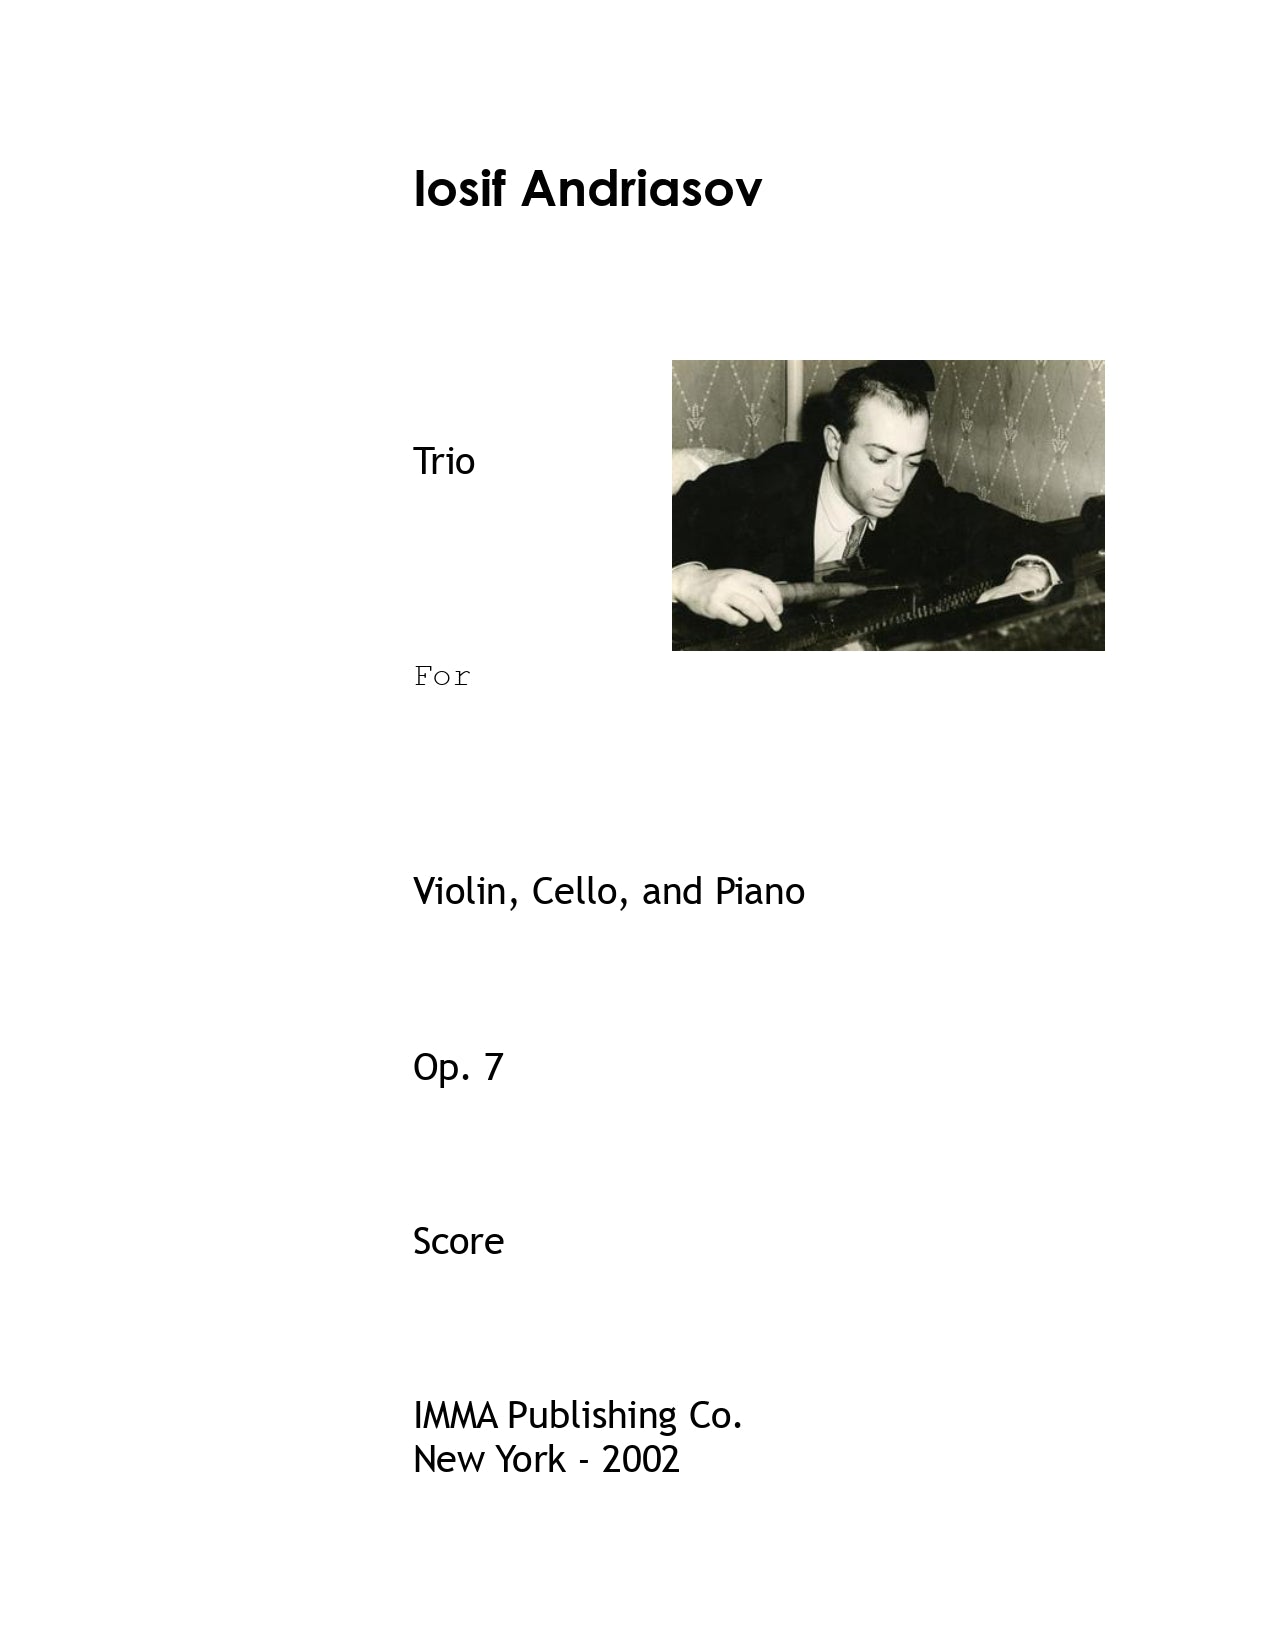 019. Iosif Andriasov: Trio, Op. 7 for Violin, Cello, and Piano.